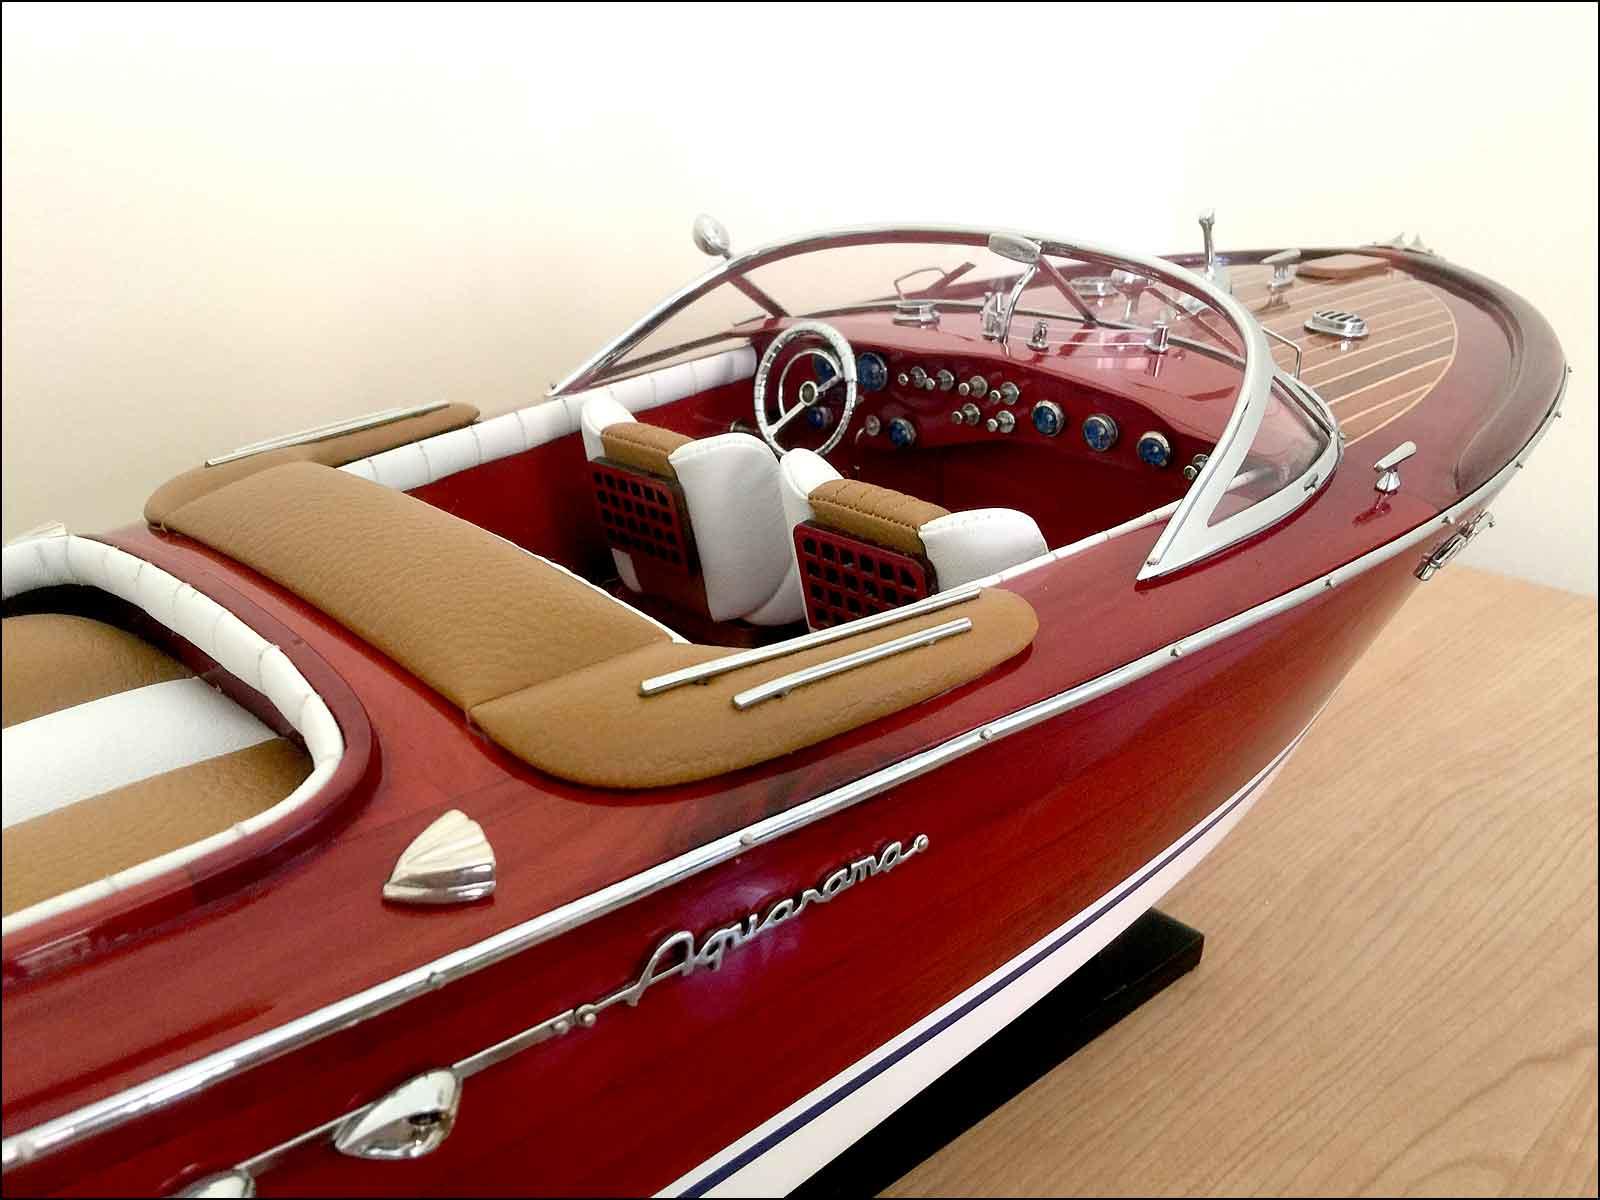 Riva yacht model small scale UK